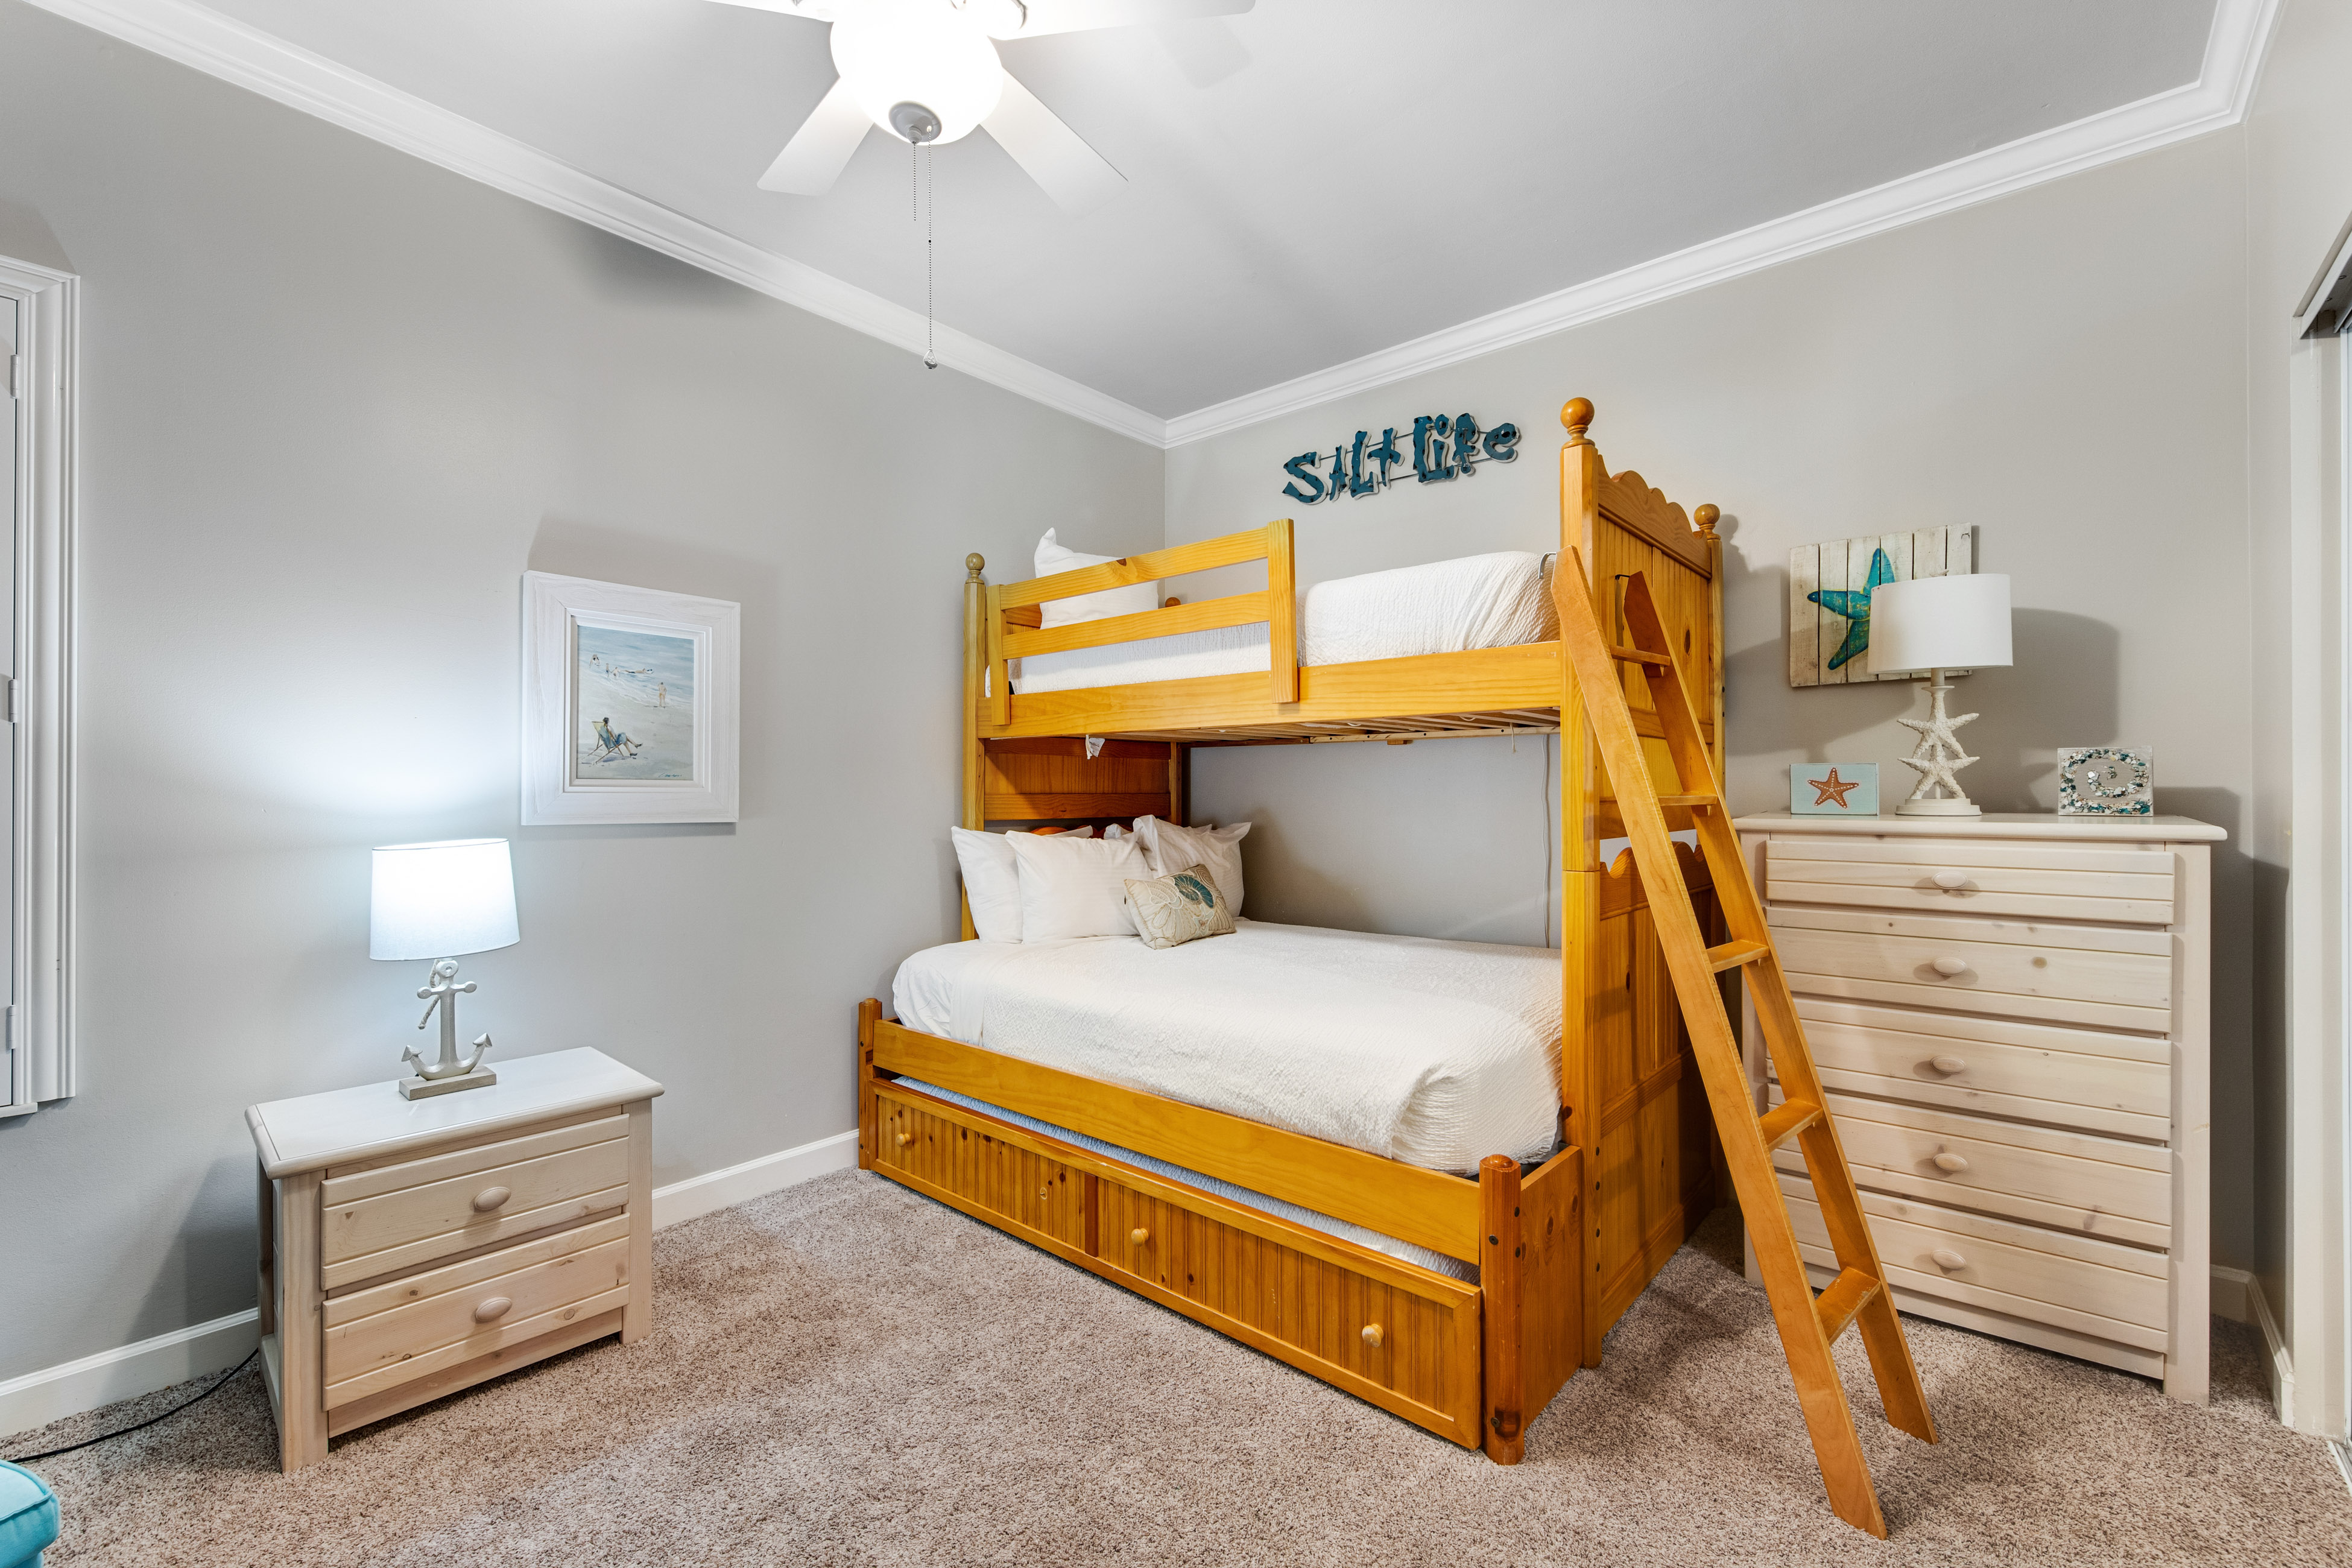 TOPS'L Summit 309 2 Bedroom Condo rental in TOPS'L Summit in Destin Florida - #16